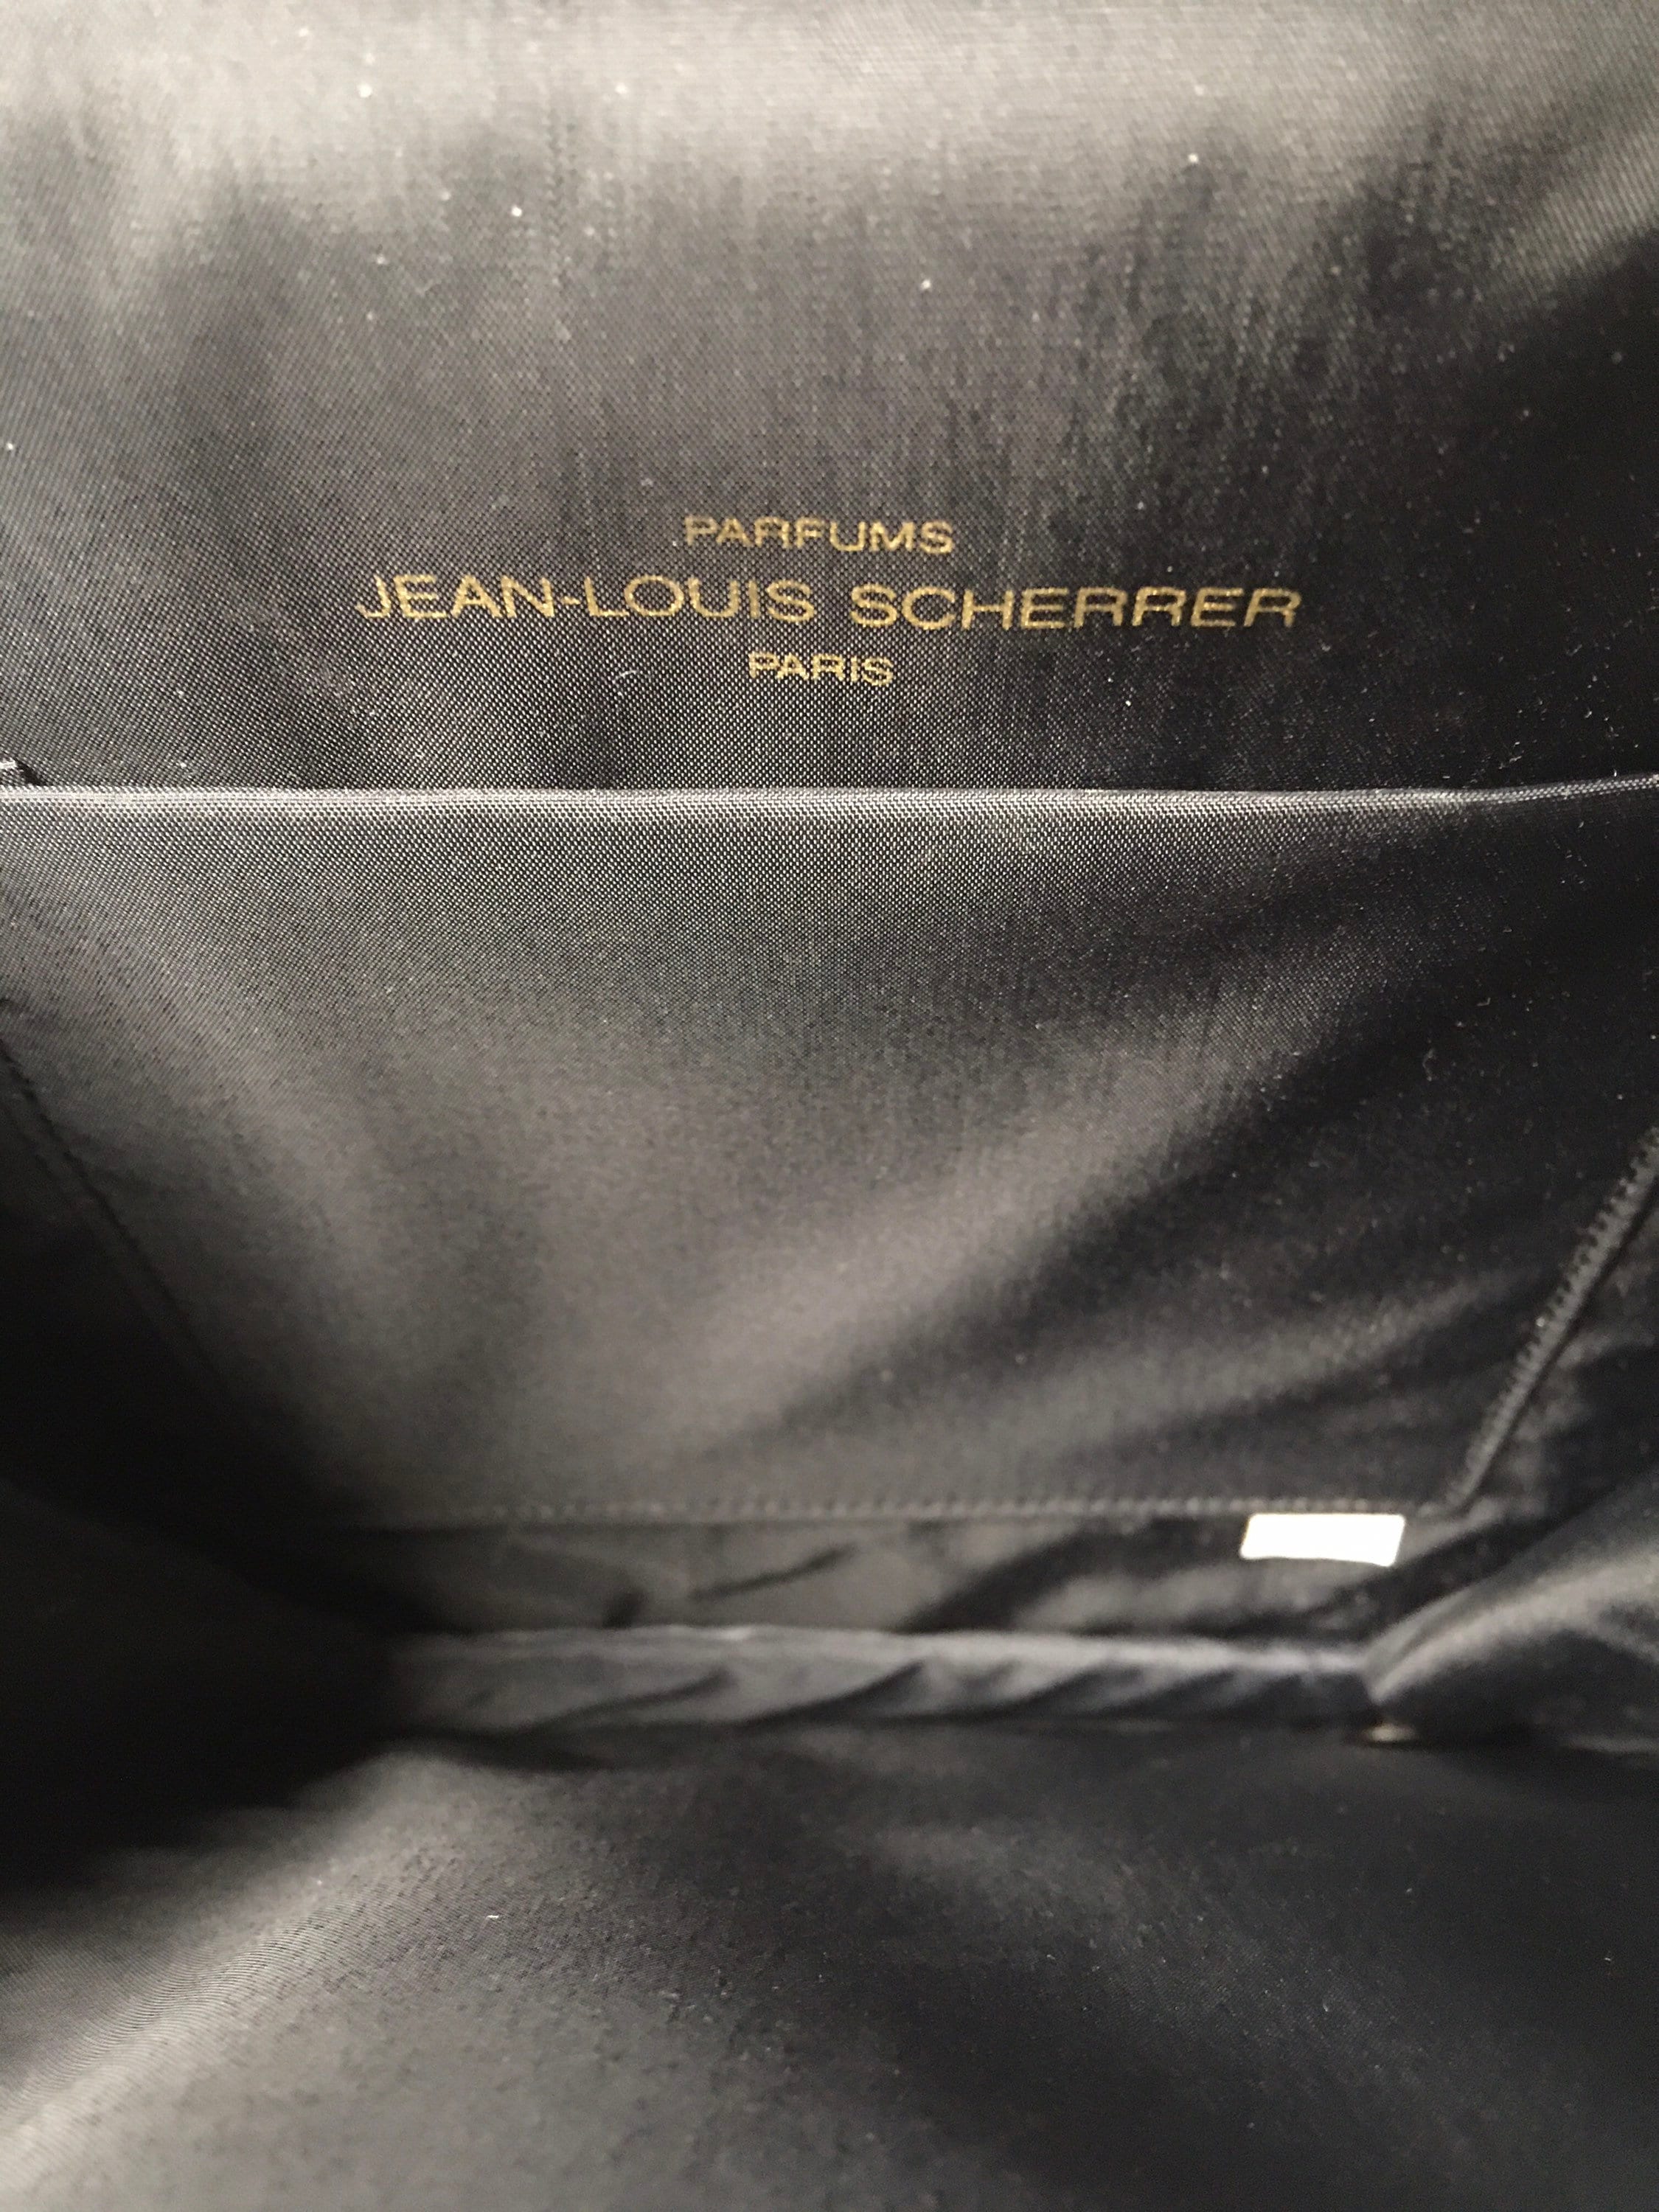 Jean-louis Scherrer Vintage Evening Clutch Bag -  Finland